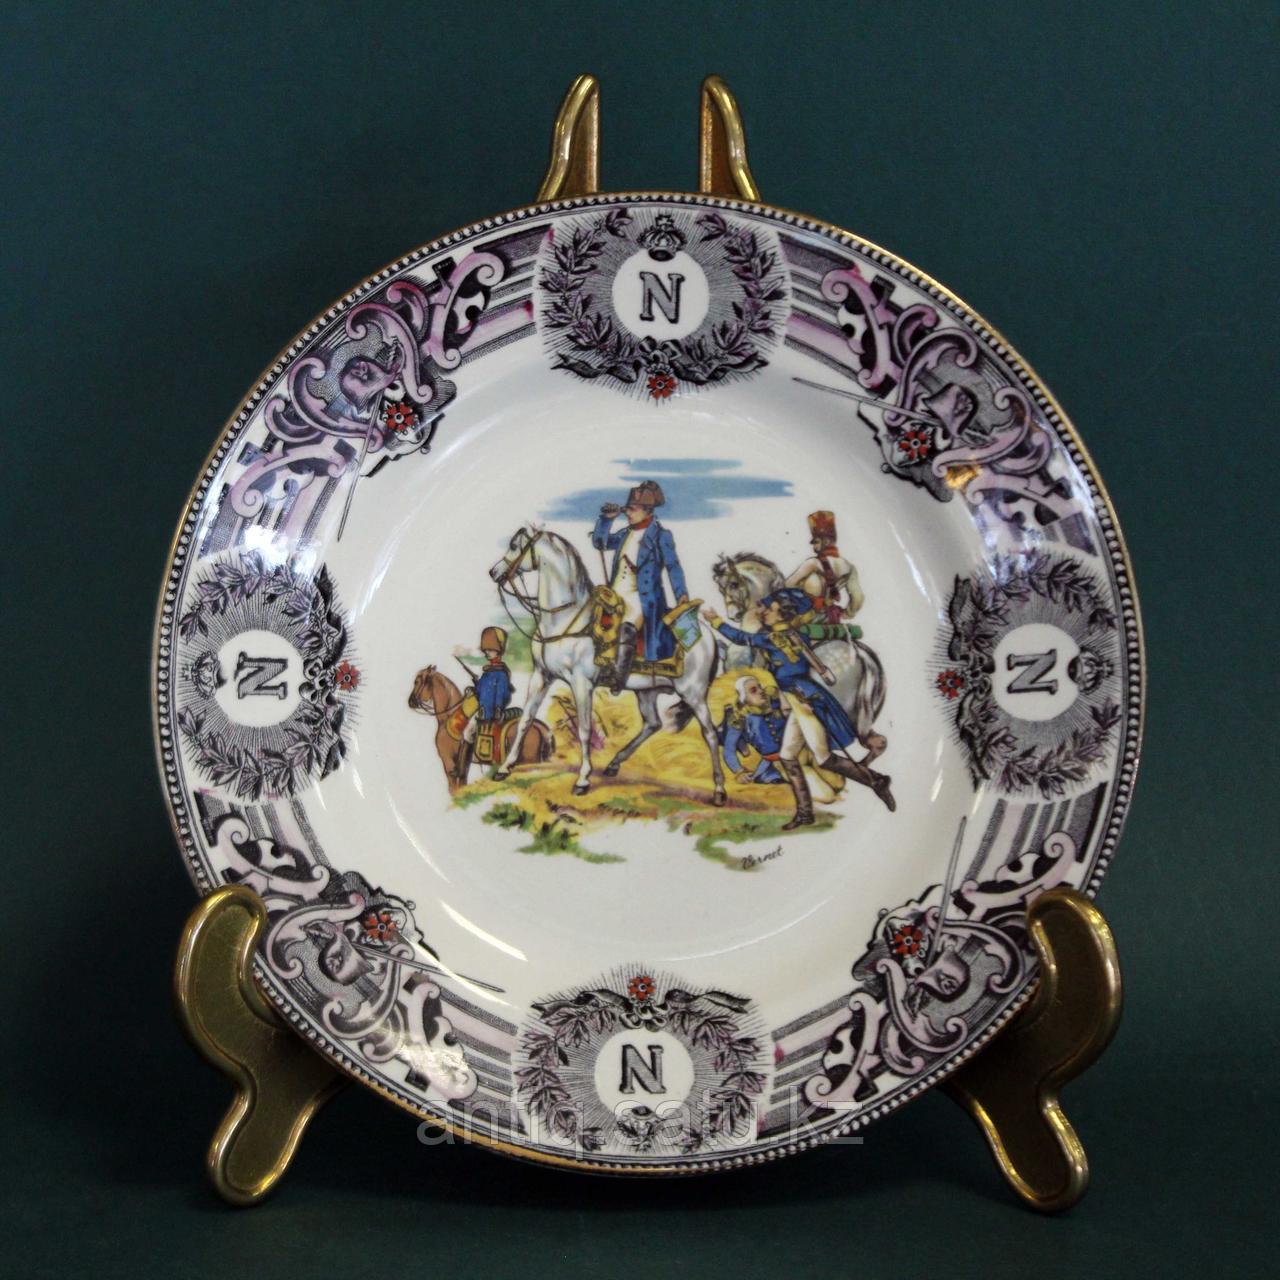 Битва под Фридландом- 1807 год. Редкая коллекционная тарелка из серии Наполеоновских баталий.